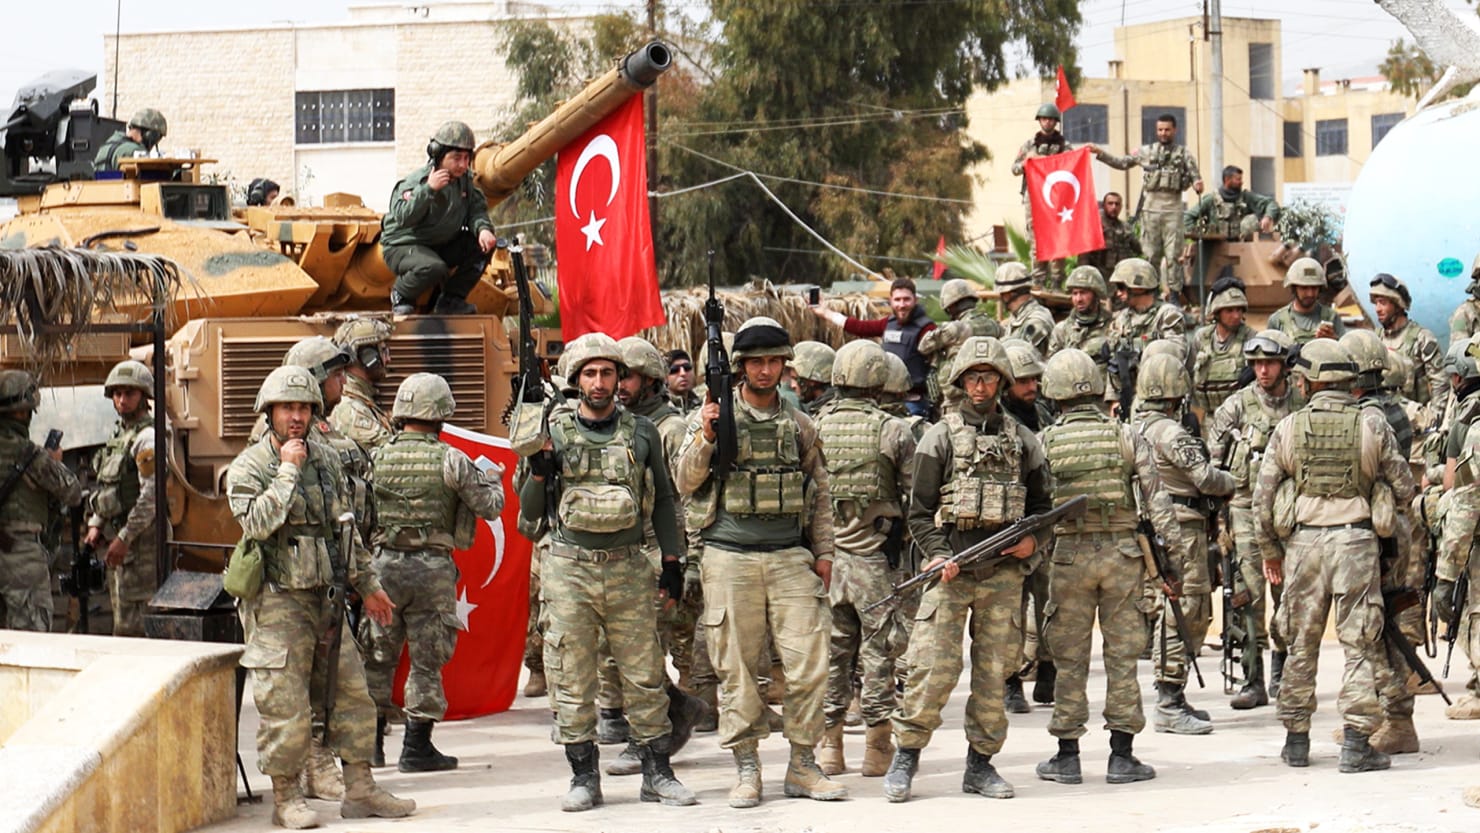 Πανηγυρικό το κλίμα στις τουρκικές εφημερίδες: «Με την συμφωνία με την Παλαιστίνη μπορεί να στείλουμε και στρατό»